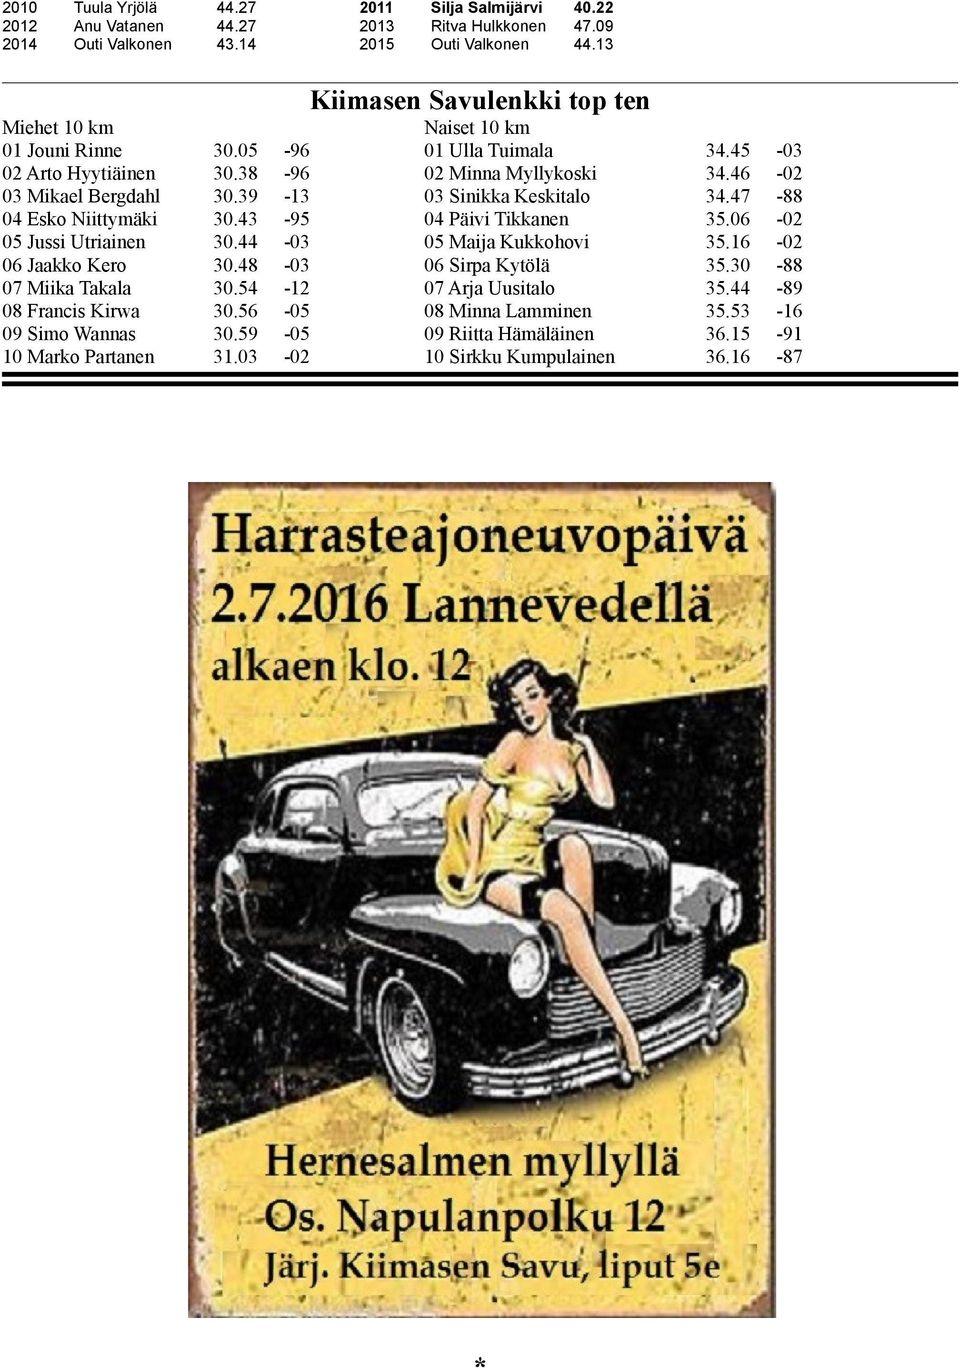 39-13 03 Sinikka Keskitalo 34.47-88 04 Esko Niittymäki 30.43-95 04 Päivi Tikkanen 35.06-02 05 Jussi Utriainen 30.44-03 05 Maija Kukkohovi 35.16-02 06 Jaakko Kero 30.